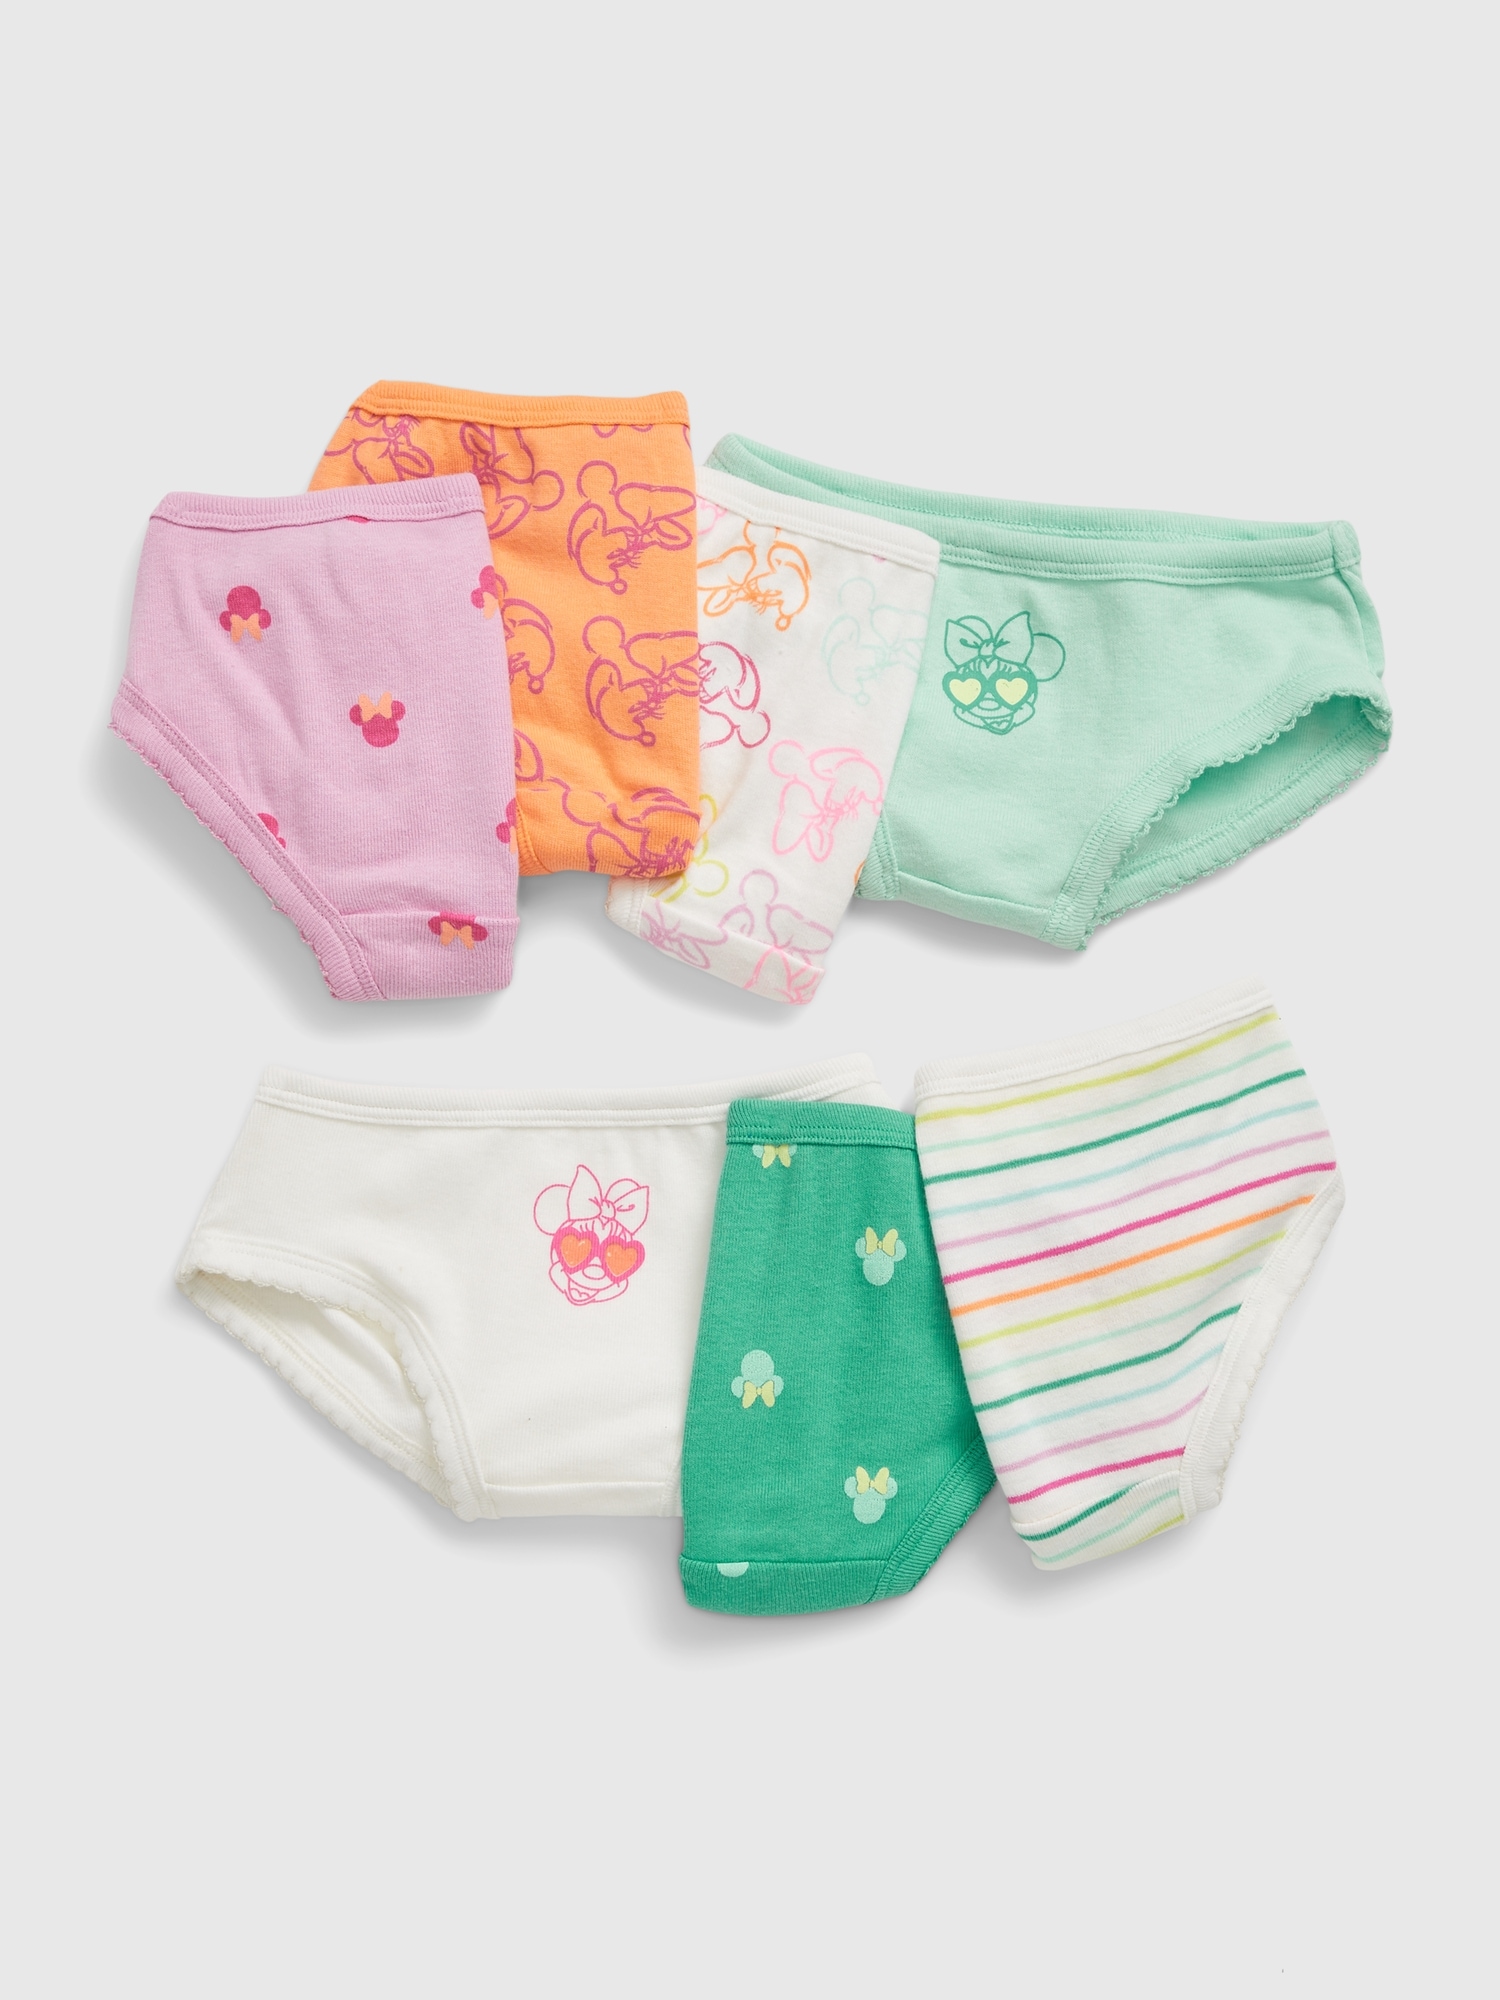 Minnie Girls Underpants Girls Underpants 2 3 4 5 6 7 8 Year Old Underwear